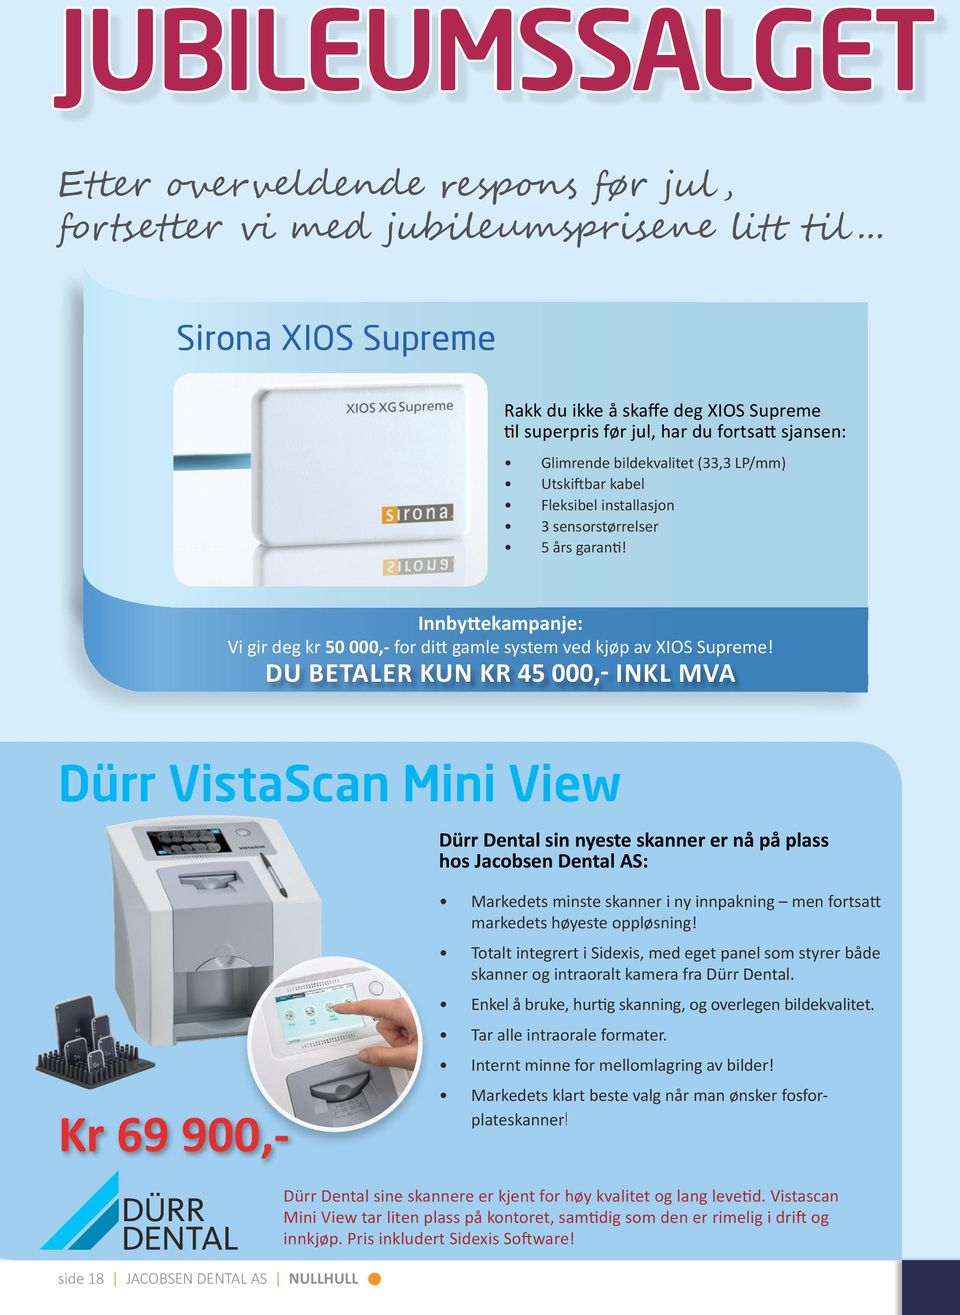 sensorstørrelser 5 års garanti! Innbyttekampanje: Vi gir deg kr 50 000,- for ditt gamle system ved kjøp av XIOS Supreme!